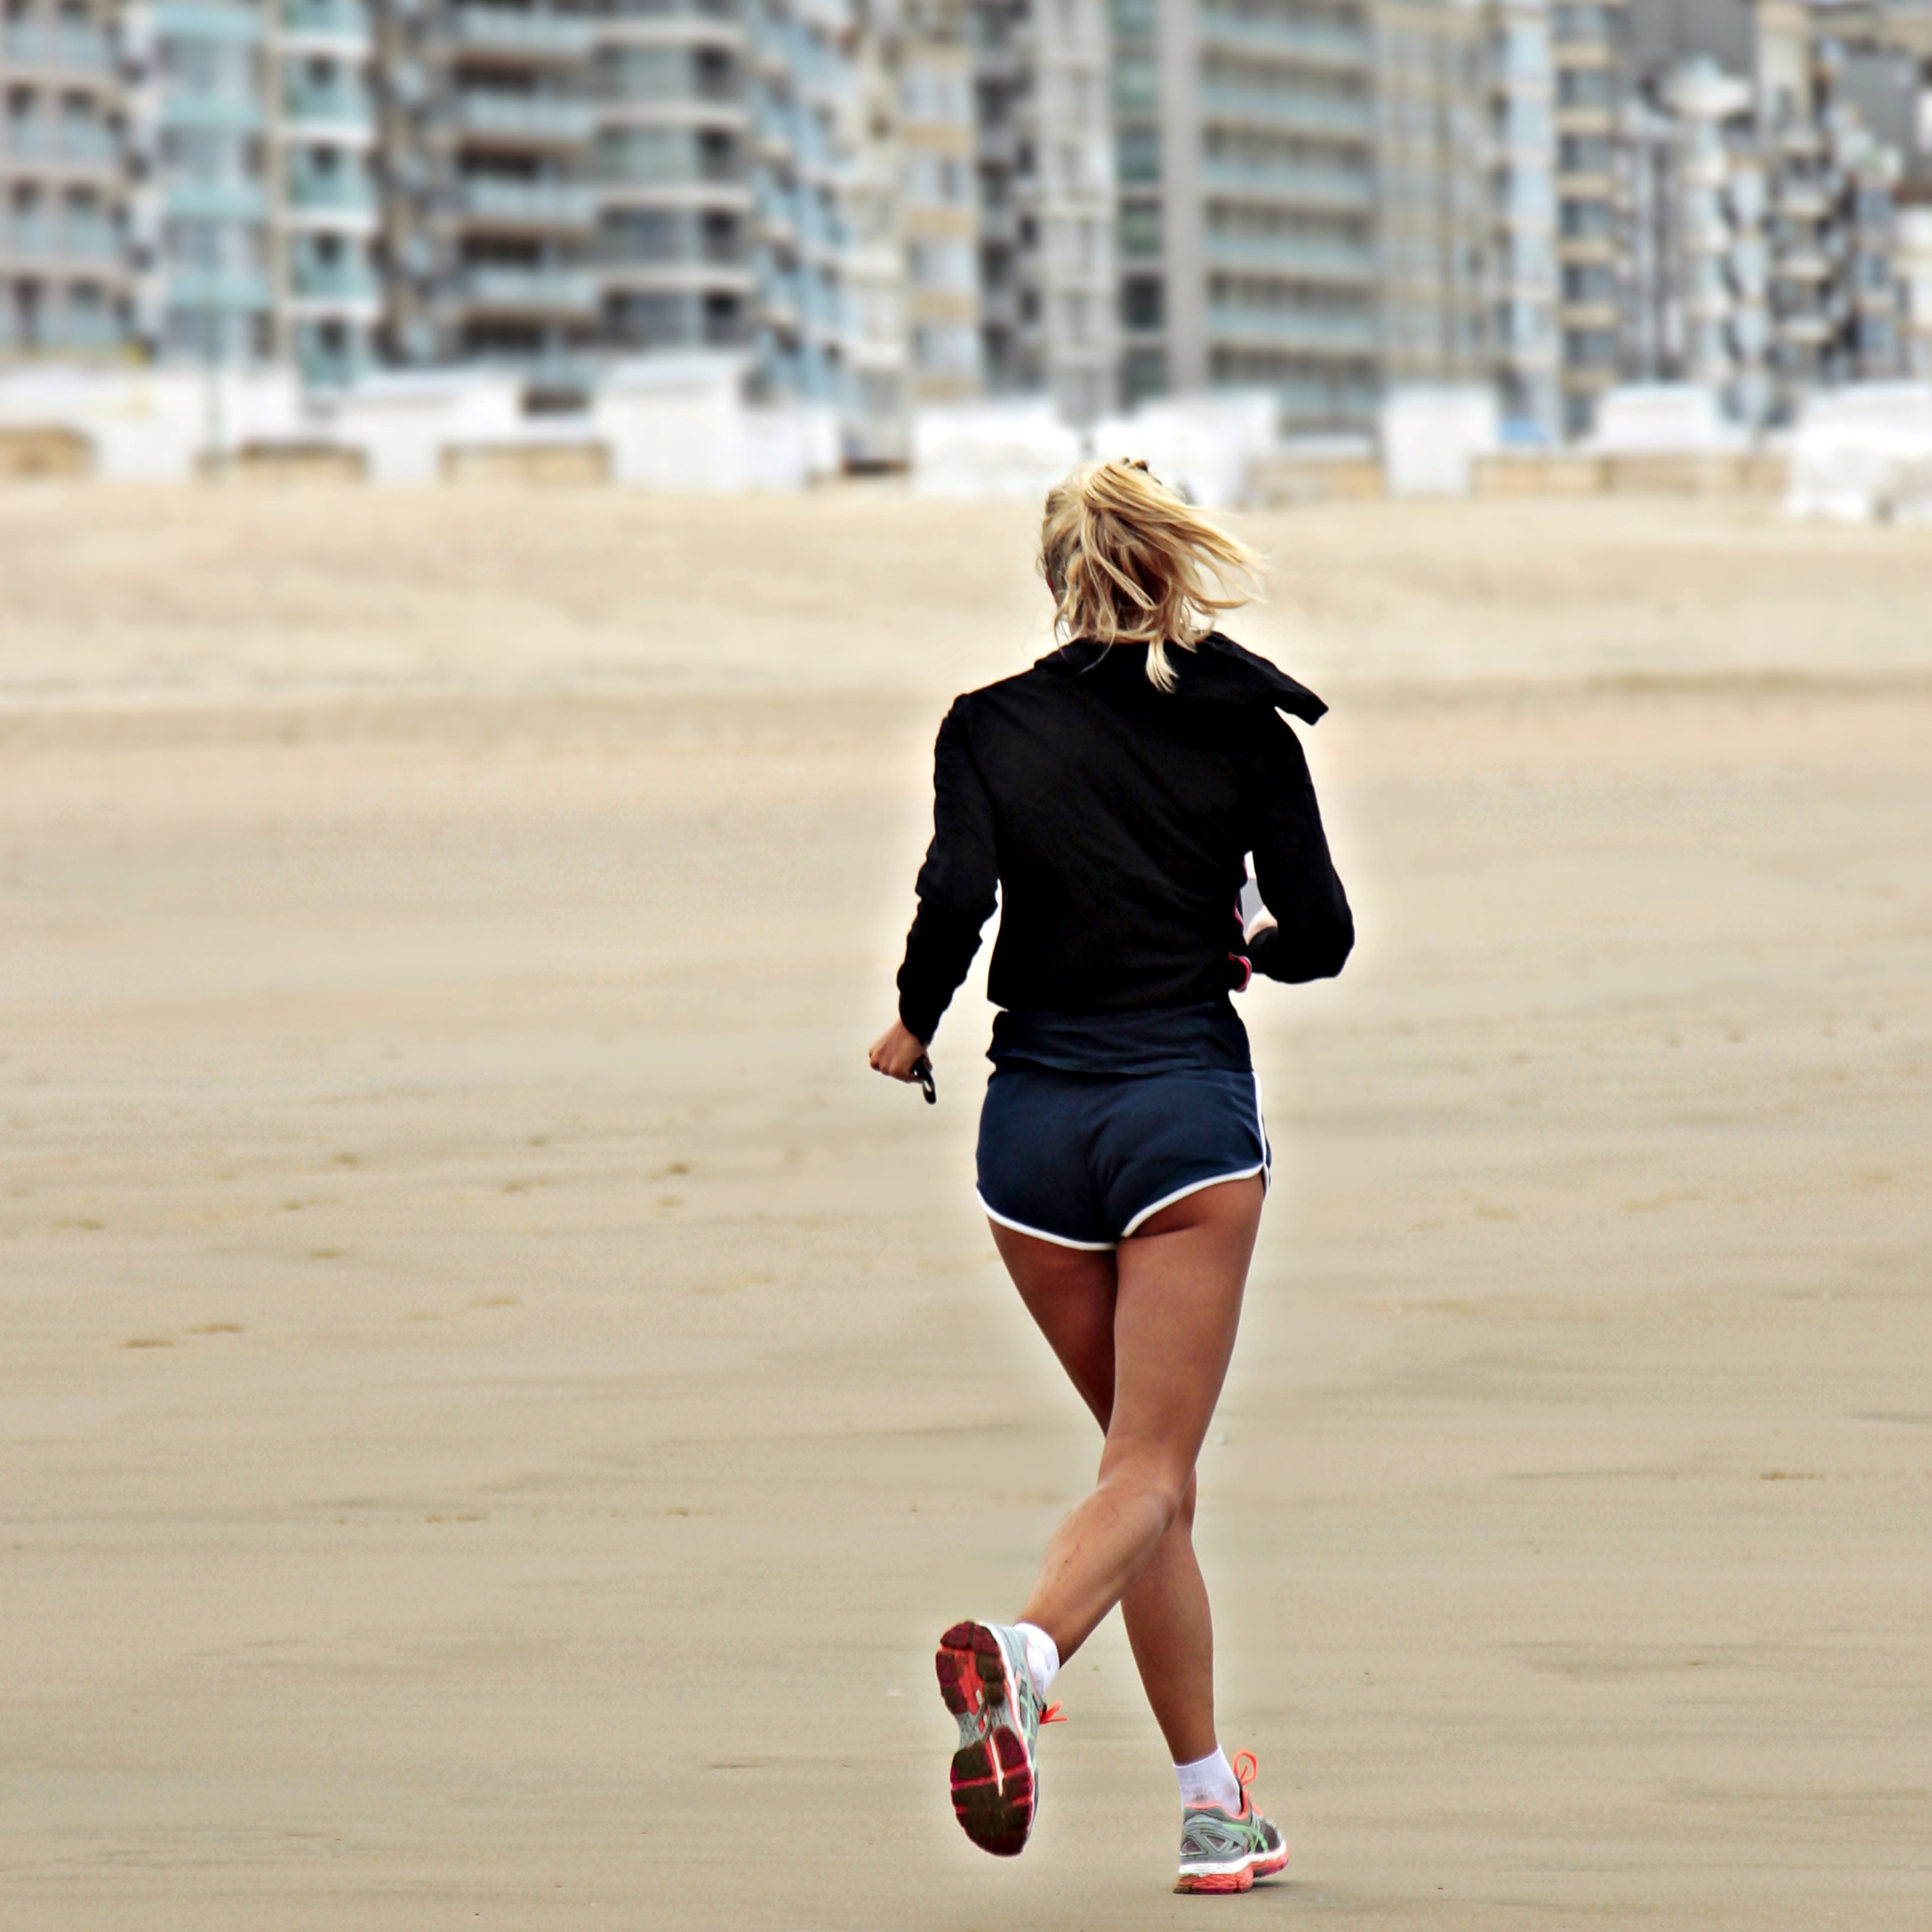 Córrer redueix el risc de mort significativament, segons la ciència